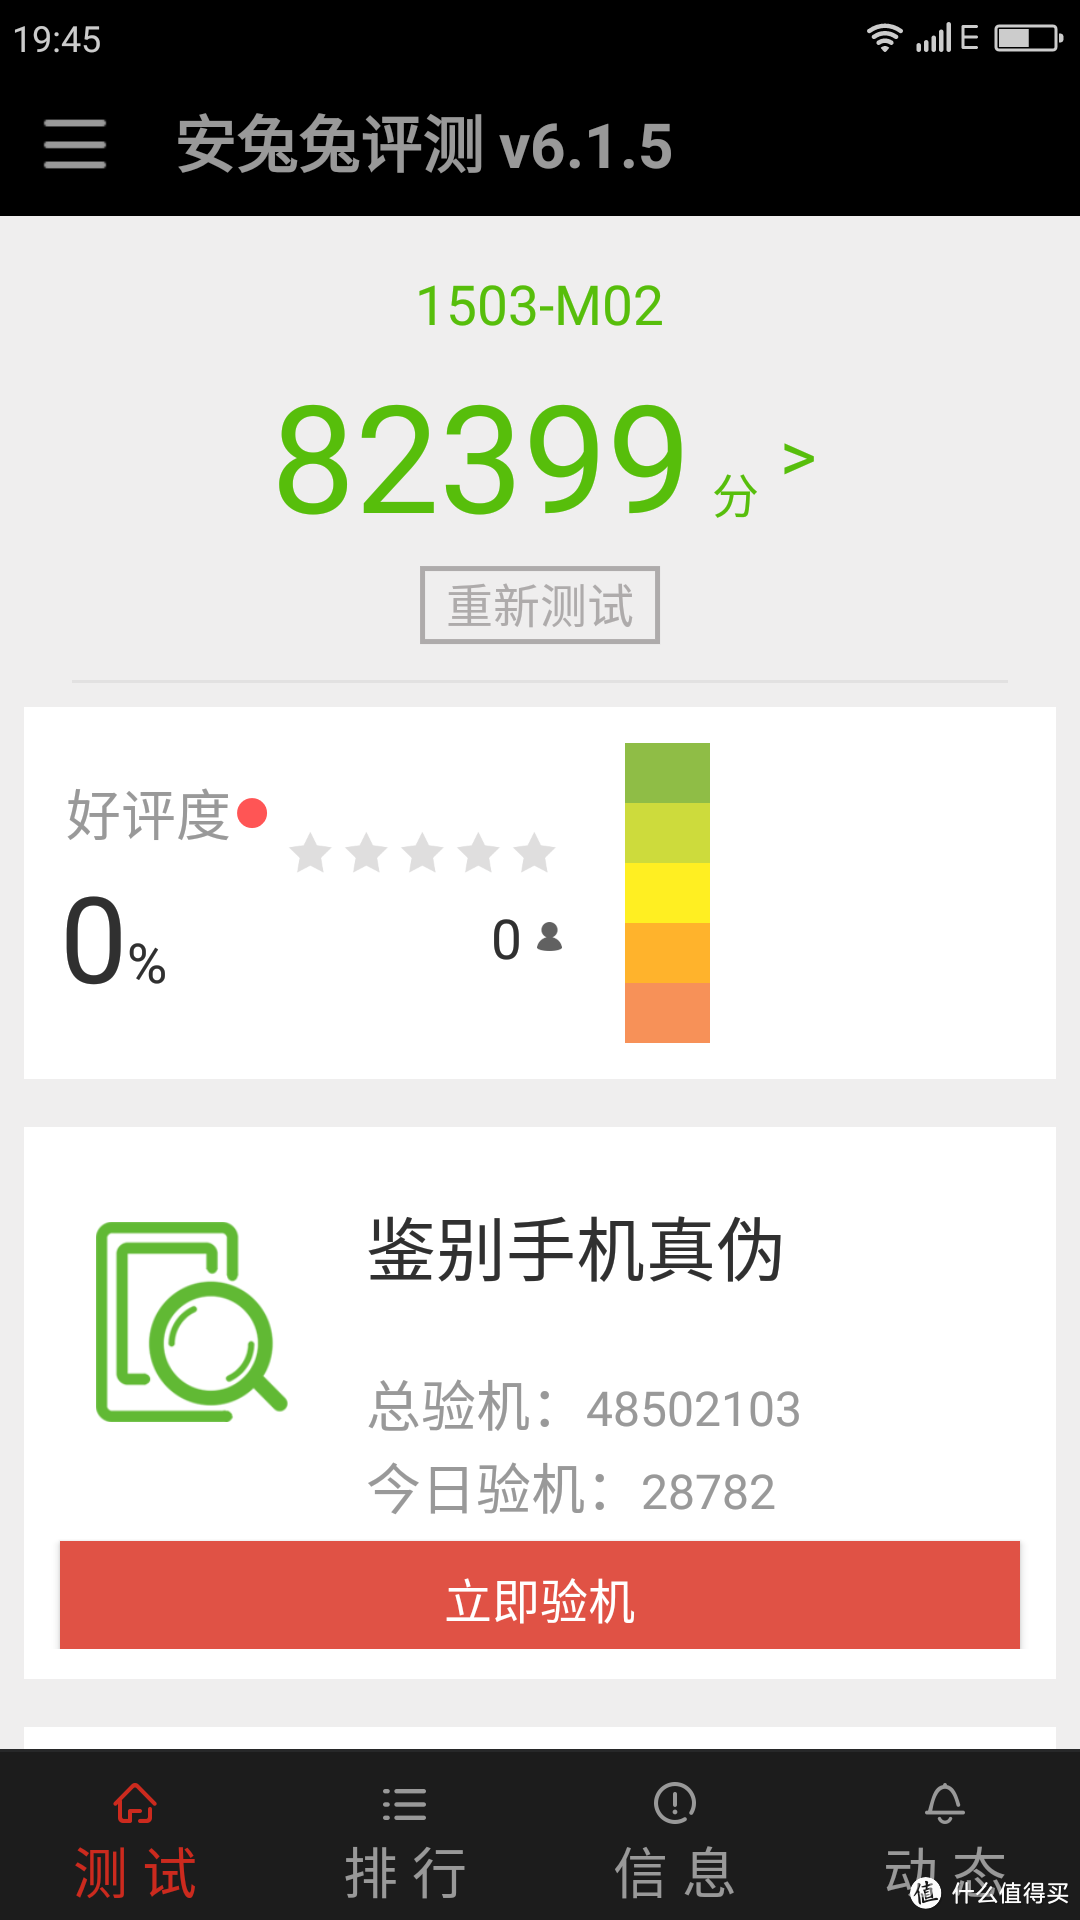 #本站首晒# 千元机玩转4GB RAM：奇虎360 N4 32GB 移动4G 智能手机